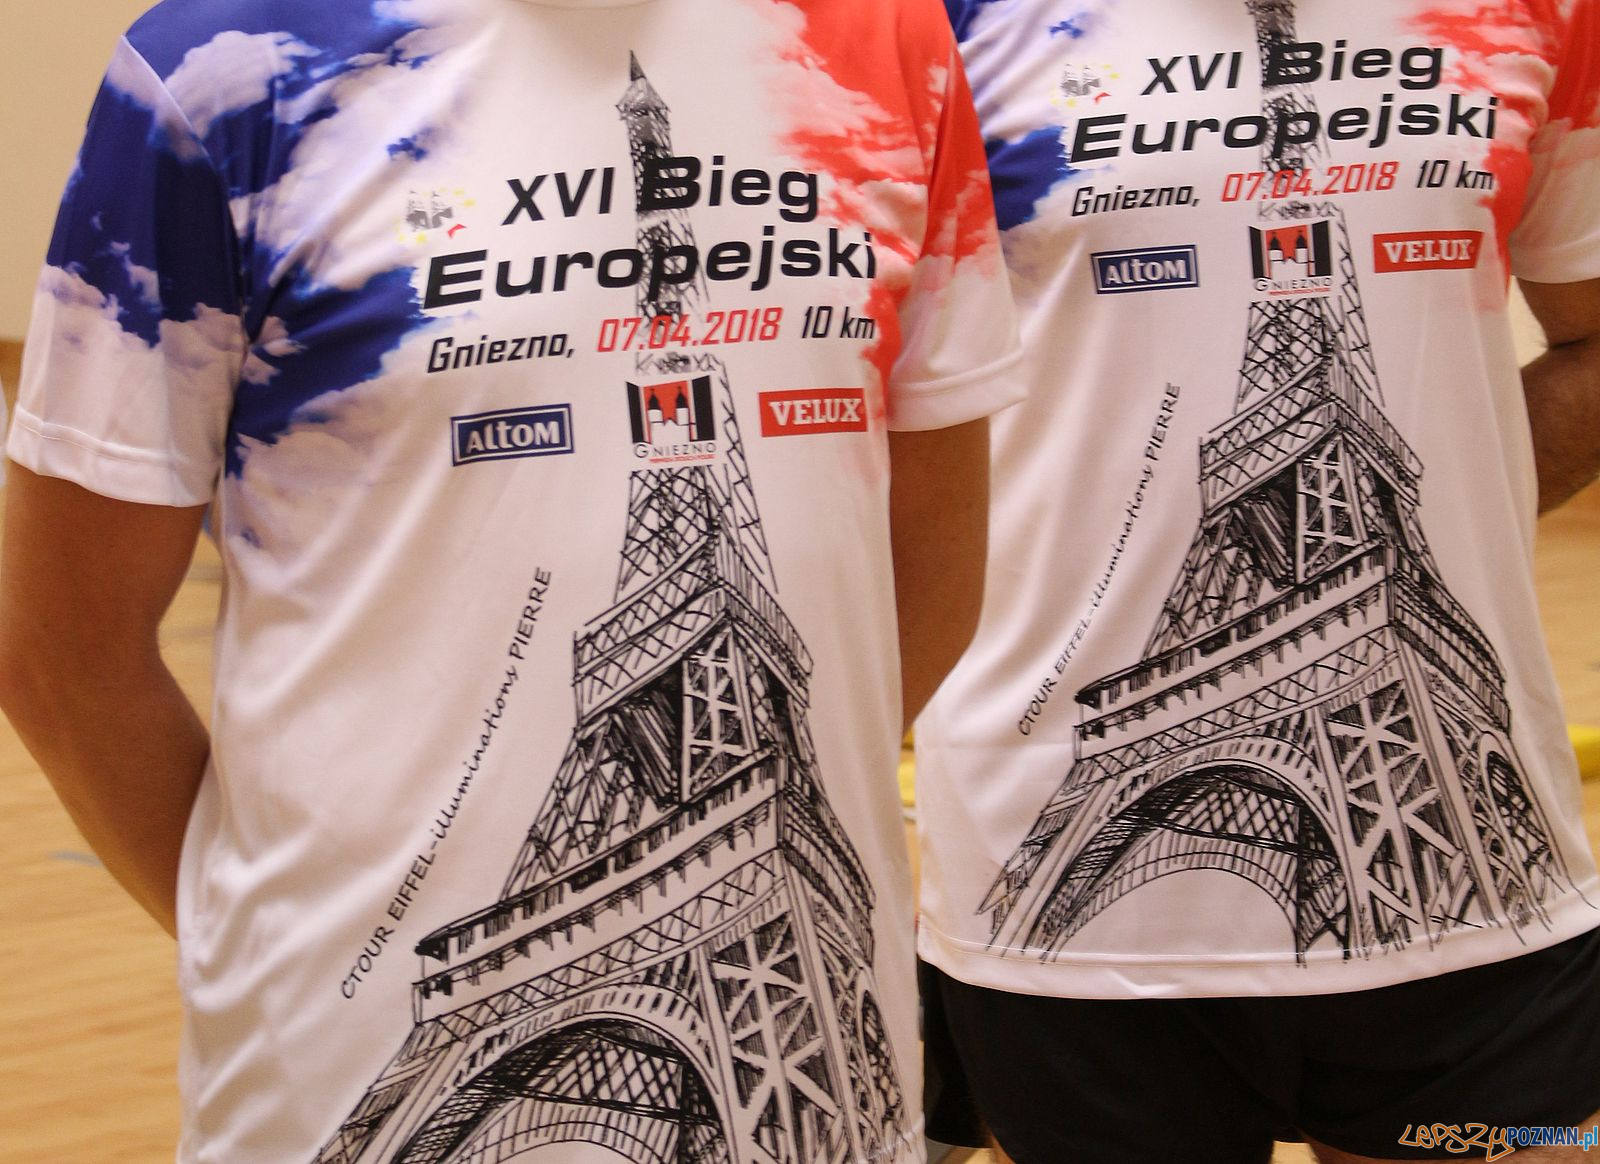 Bieg Europejski w Gnieźnie - koszulki  Foto: materiały prasowe